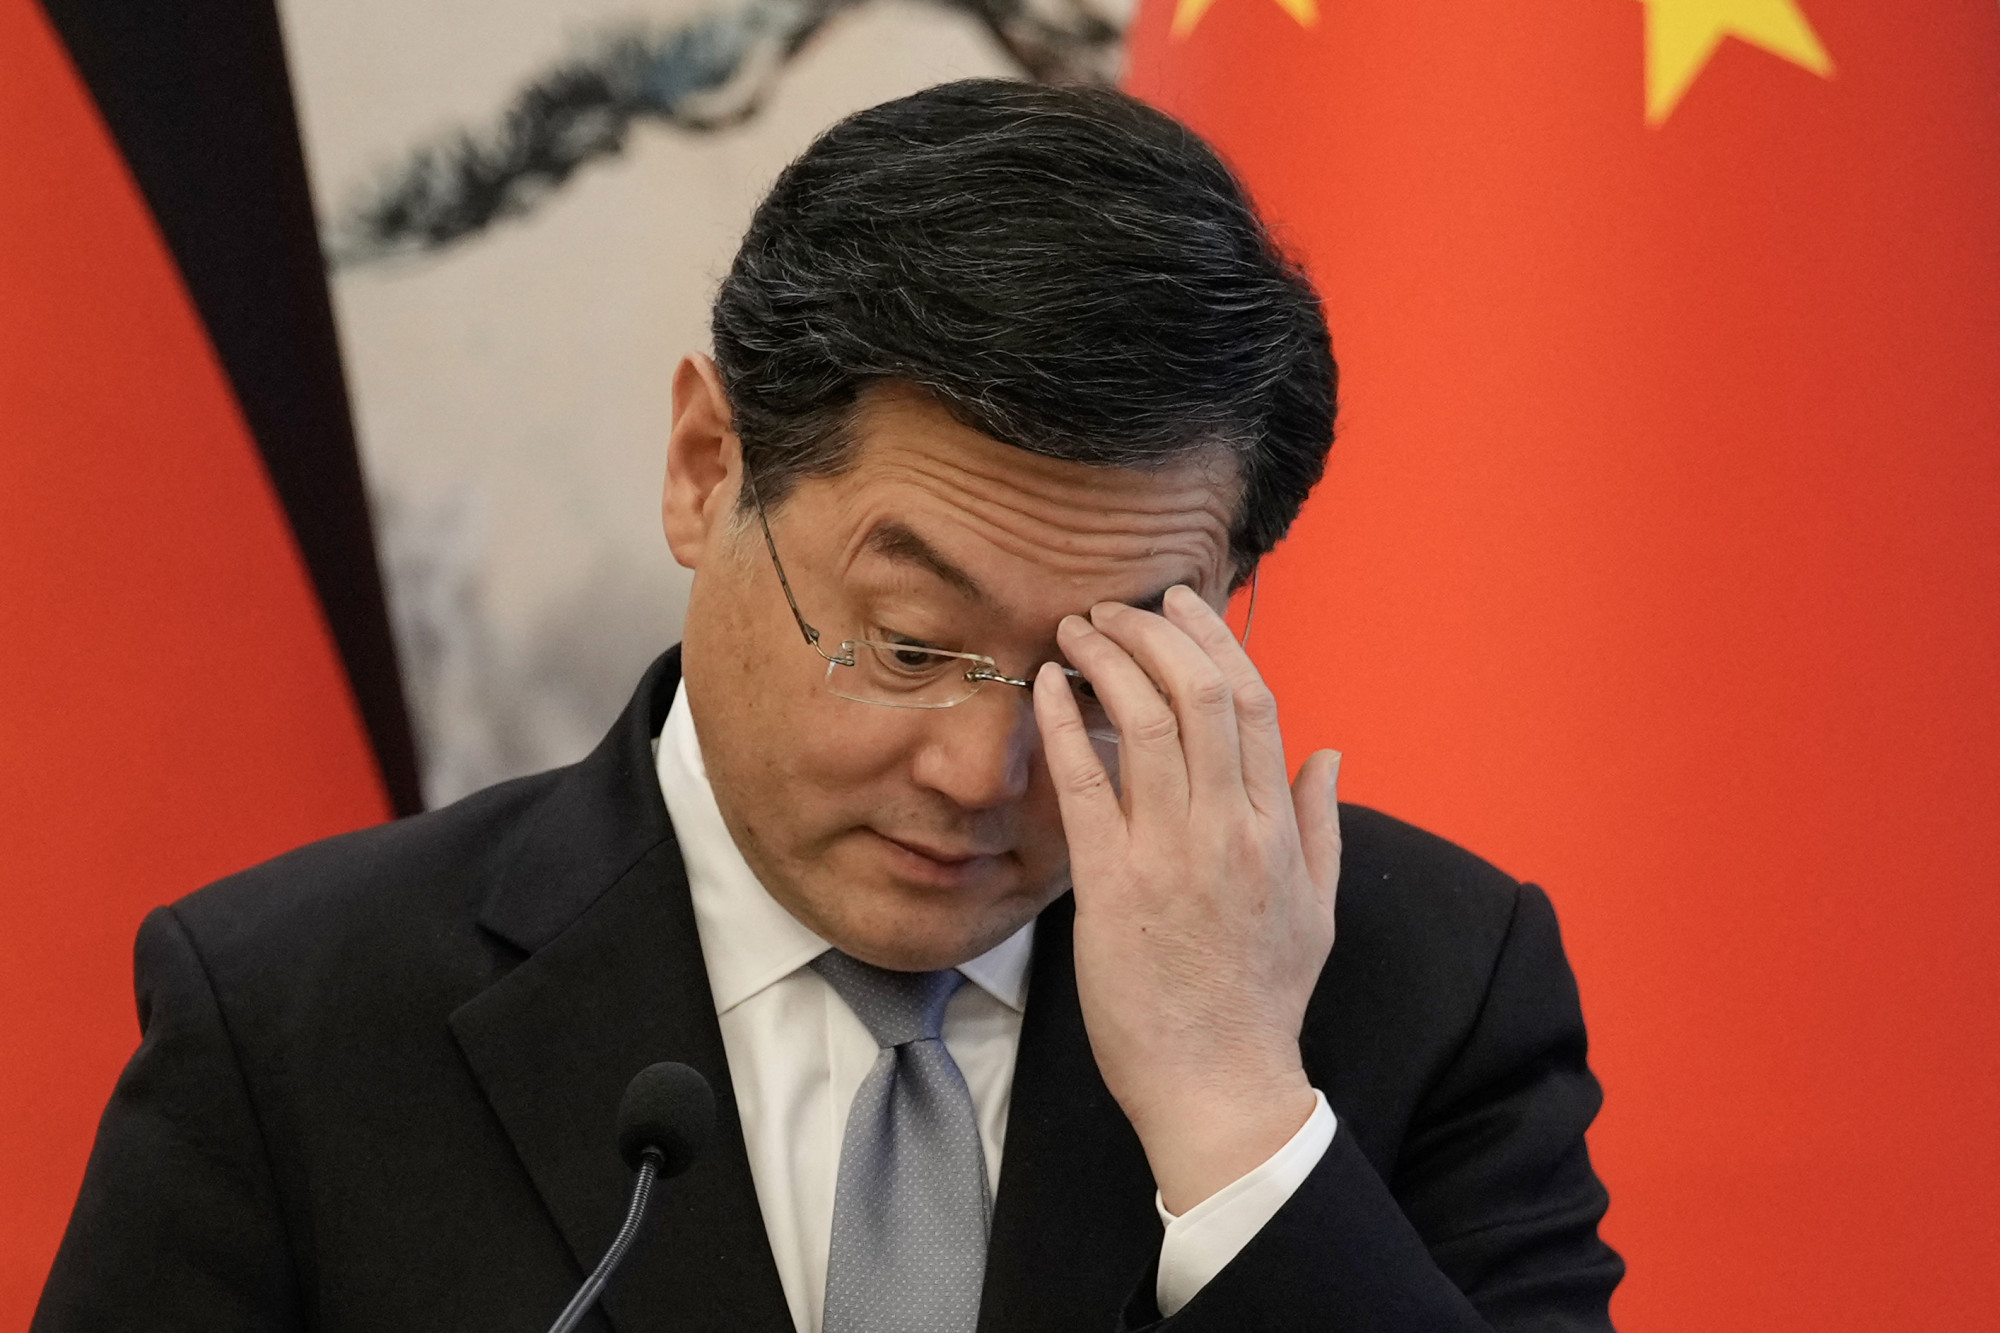 Néhány hónap után már el is távolították a kínai külügyminisztert, aki egy hónapja nem jelent meg a nyilvánosság előtt